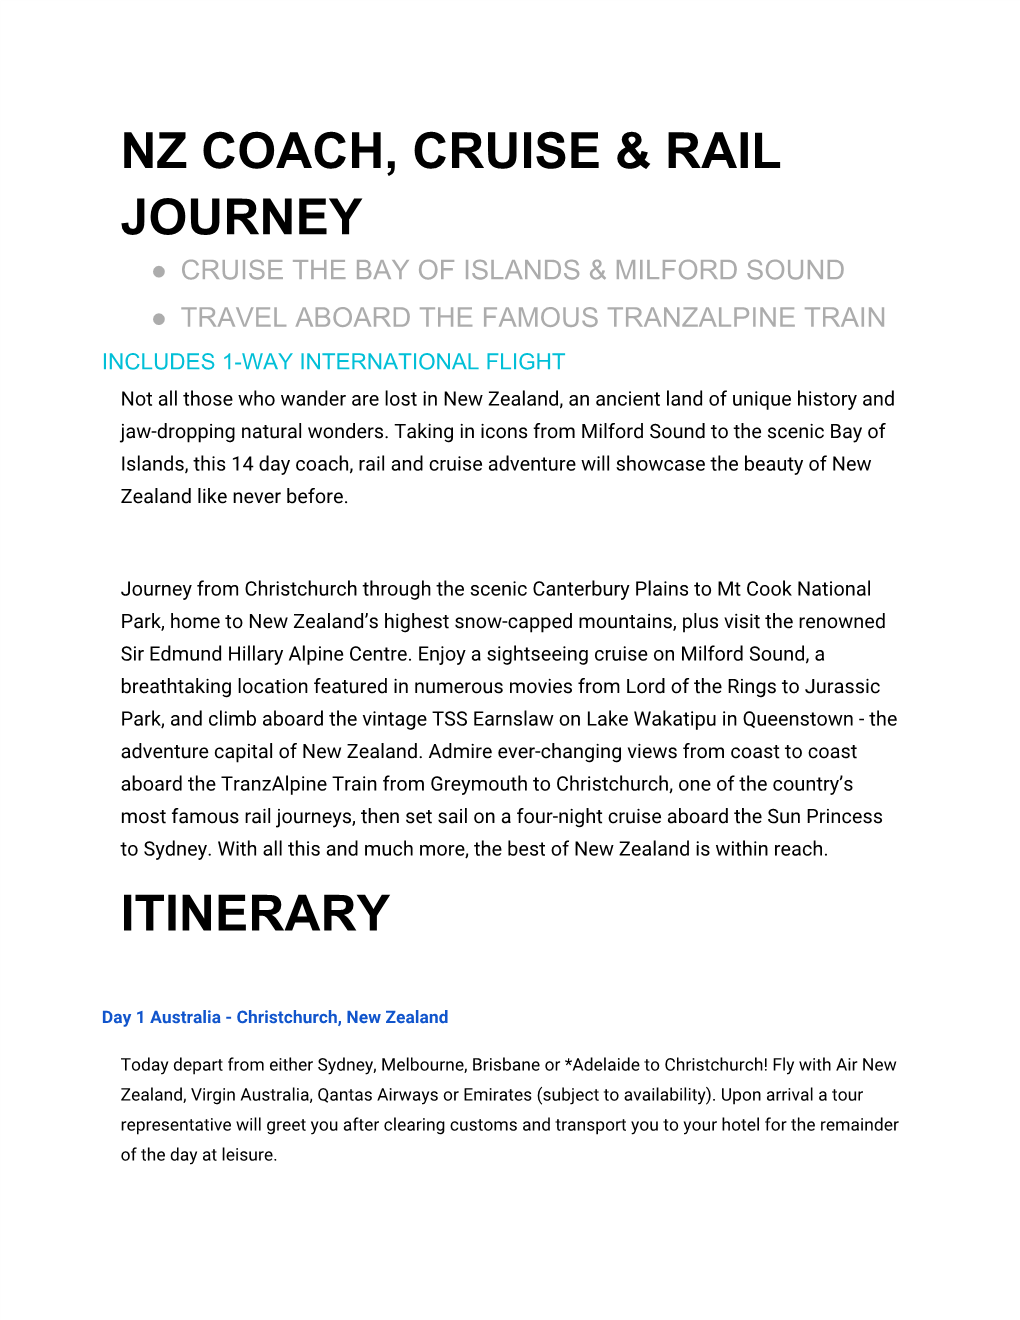 Nz Coach, Cruise & Rail Journey Itinerary